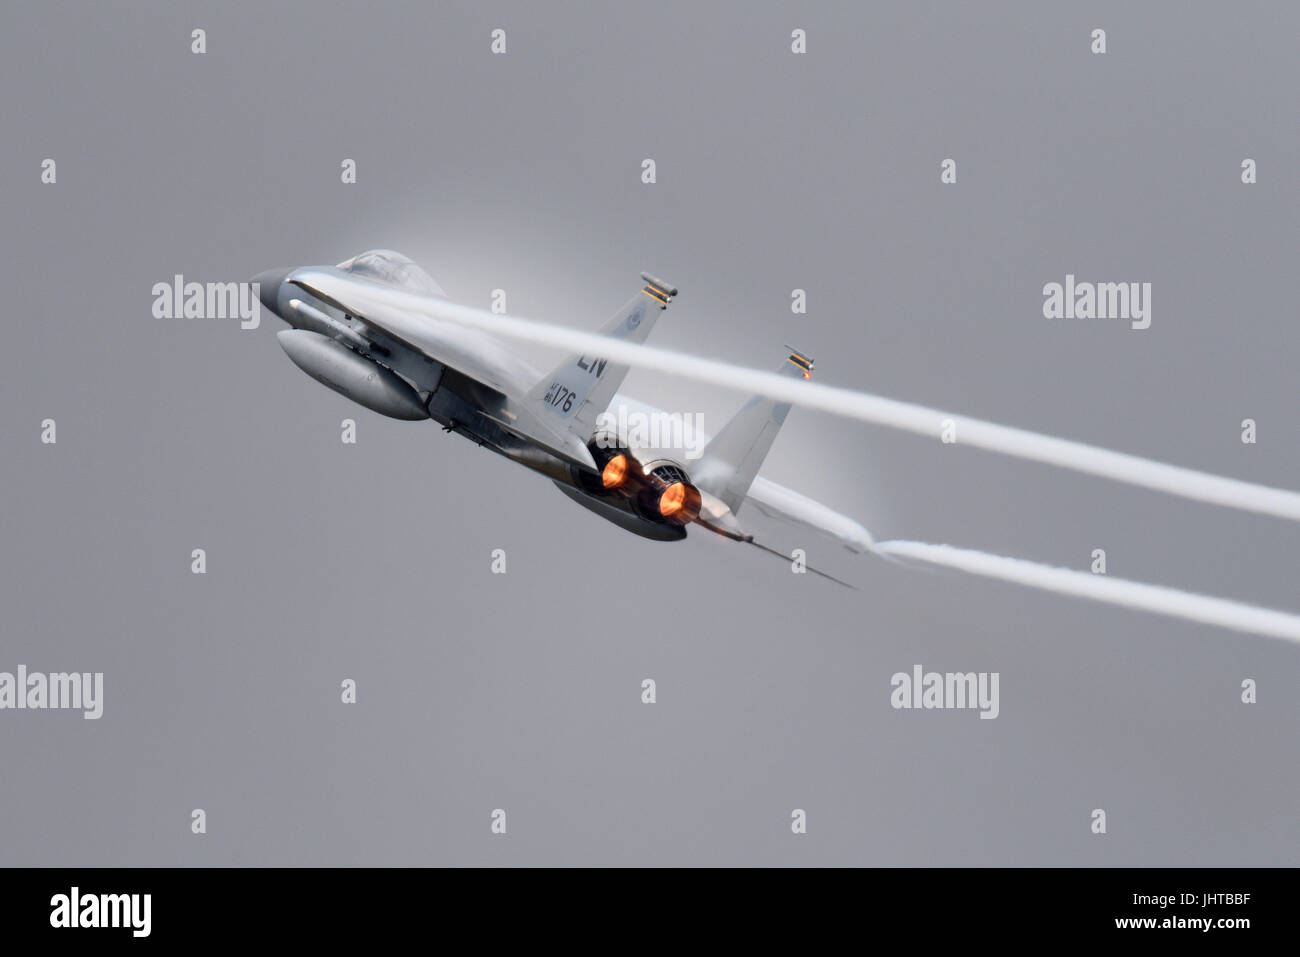 USAF McDonnell Douglas Boeing F-15 Eagle Kampfflugzeug von RAF Lakenheath, das bei einer Flugschau eine Hochgeschwindigkeits-Kraftdemonstration durchführte und eine Wolke aus Feuchtigkeit aus dem Druckluftdruck erzeugt Stockfoto